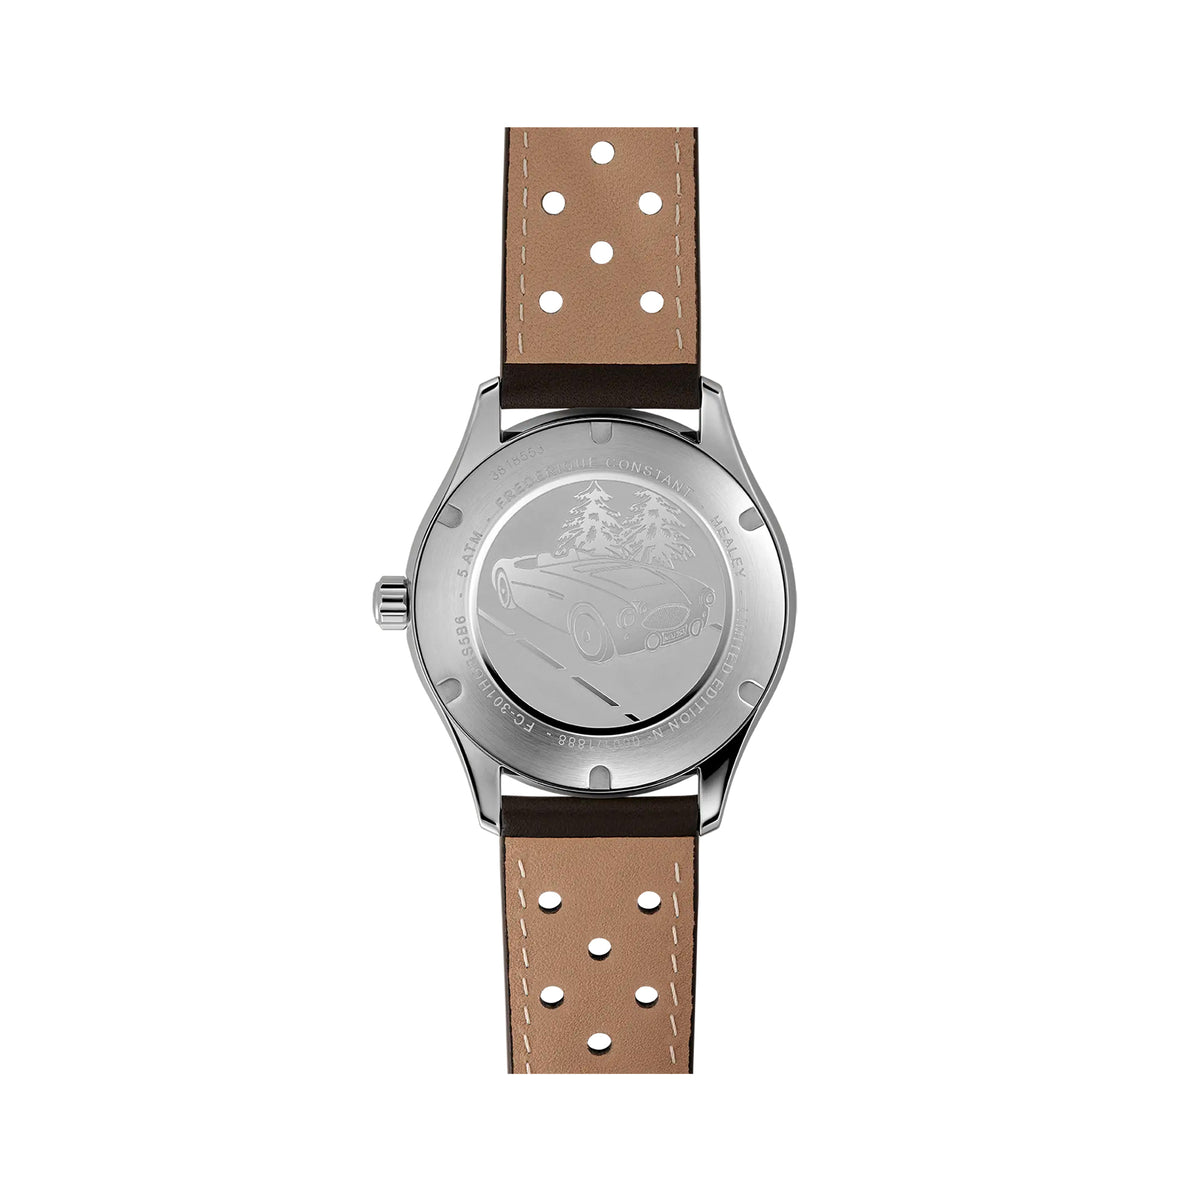 Frederique Constant Classic Men’s 40mm Chronometer Watch FC-301HGRS5B6